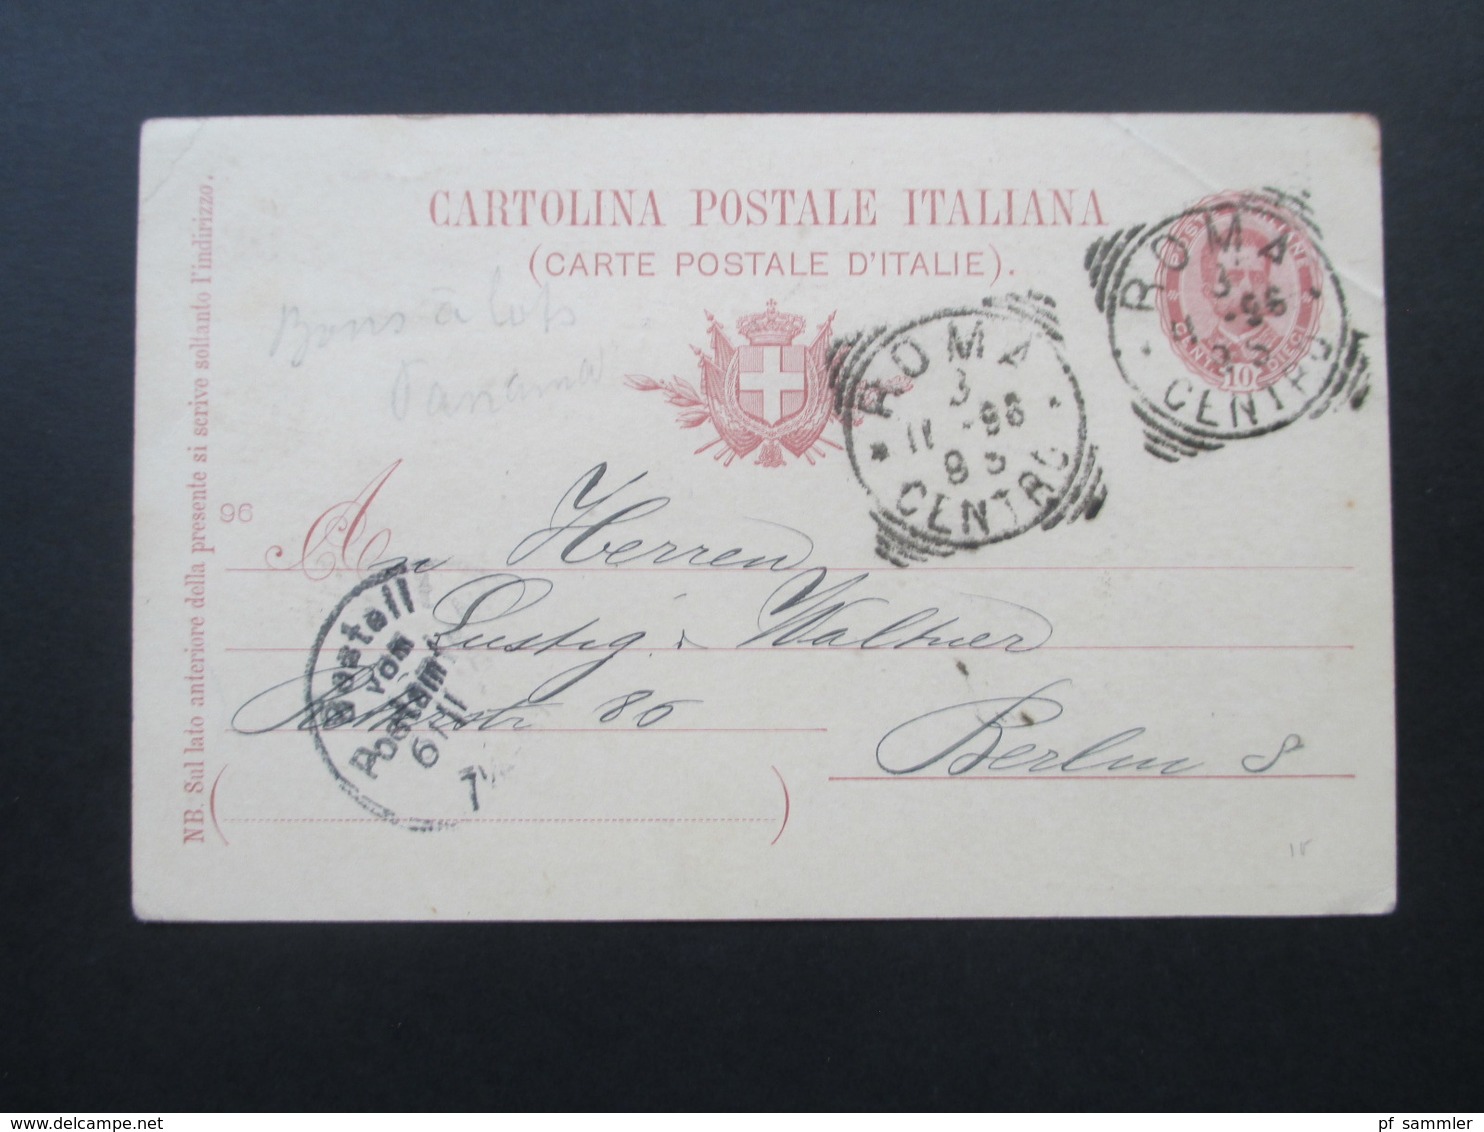 Italien Ganzsache P 31 Gedenkarte Vermählung Des Kronprinzen! Roma - Berlin Mit AK Stempel - Postwaardestukken